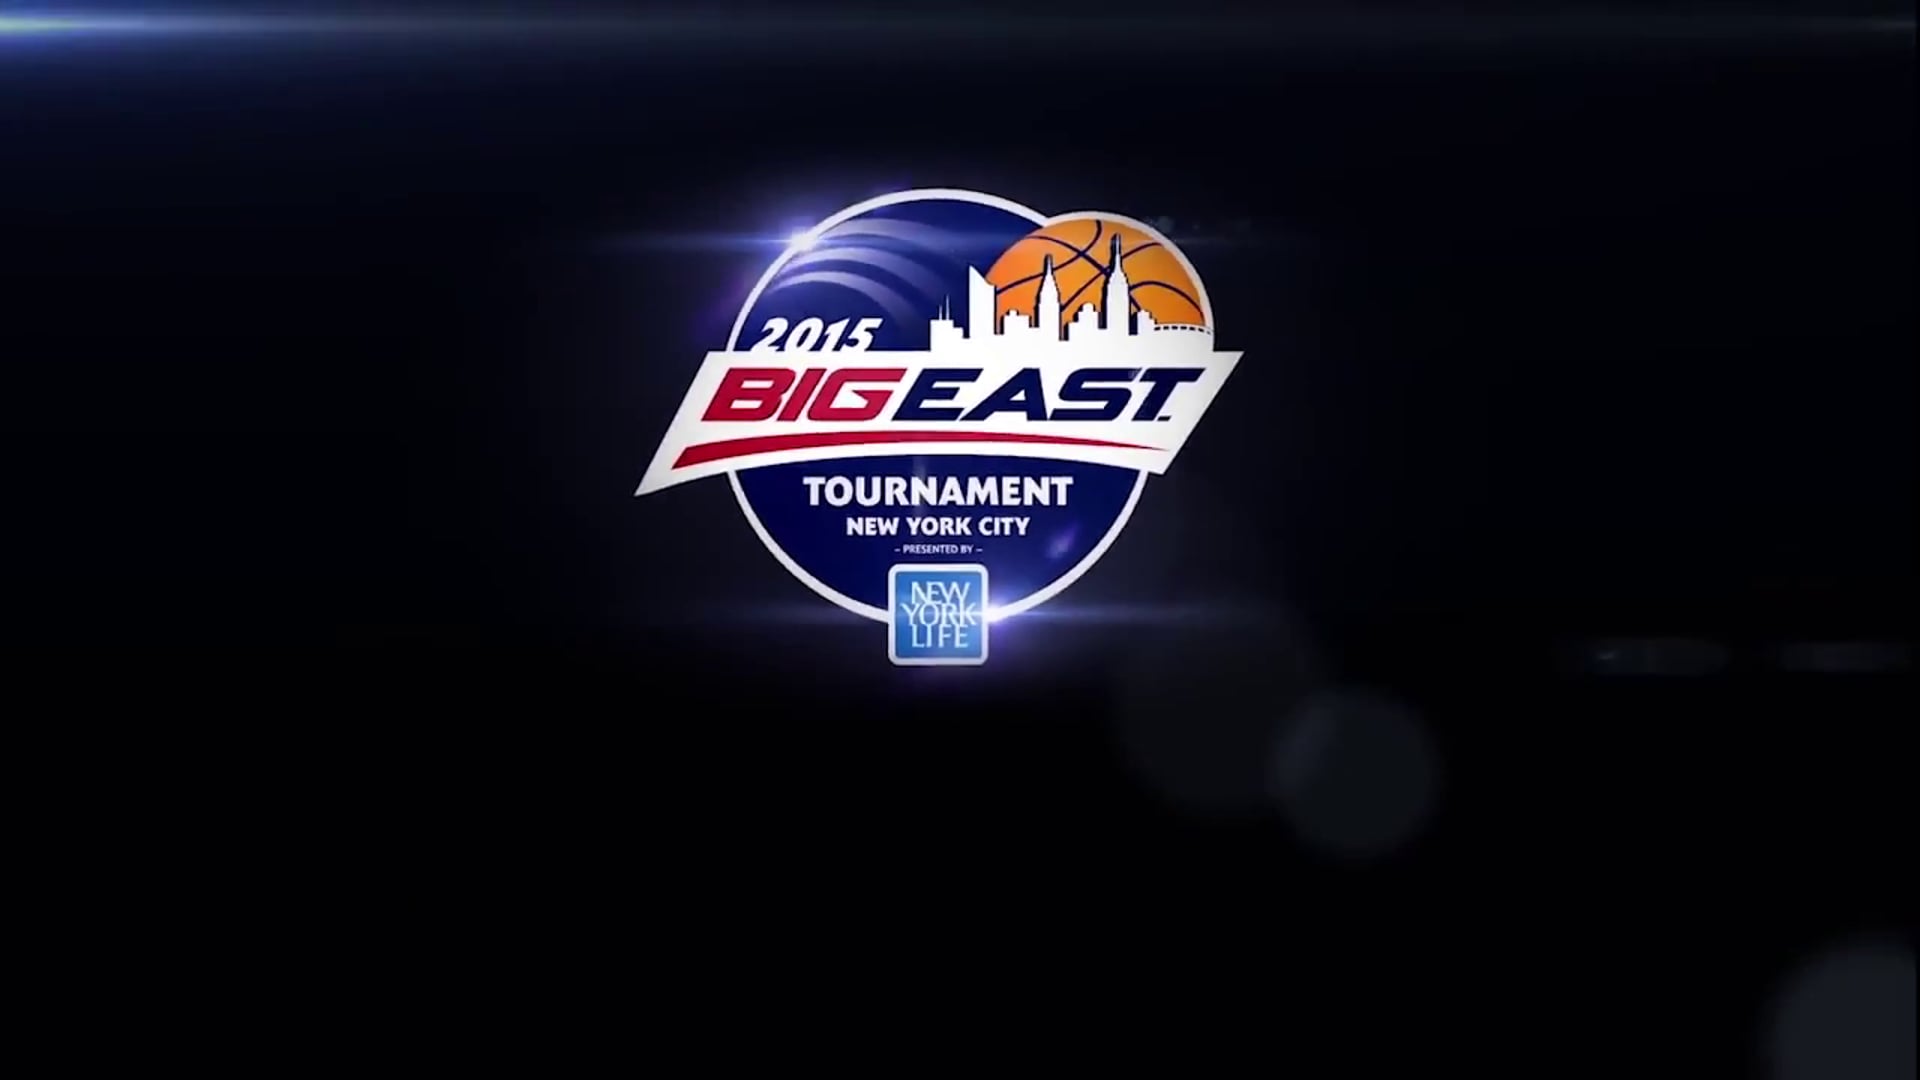 2015 BIG EAST Tournament